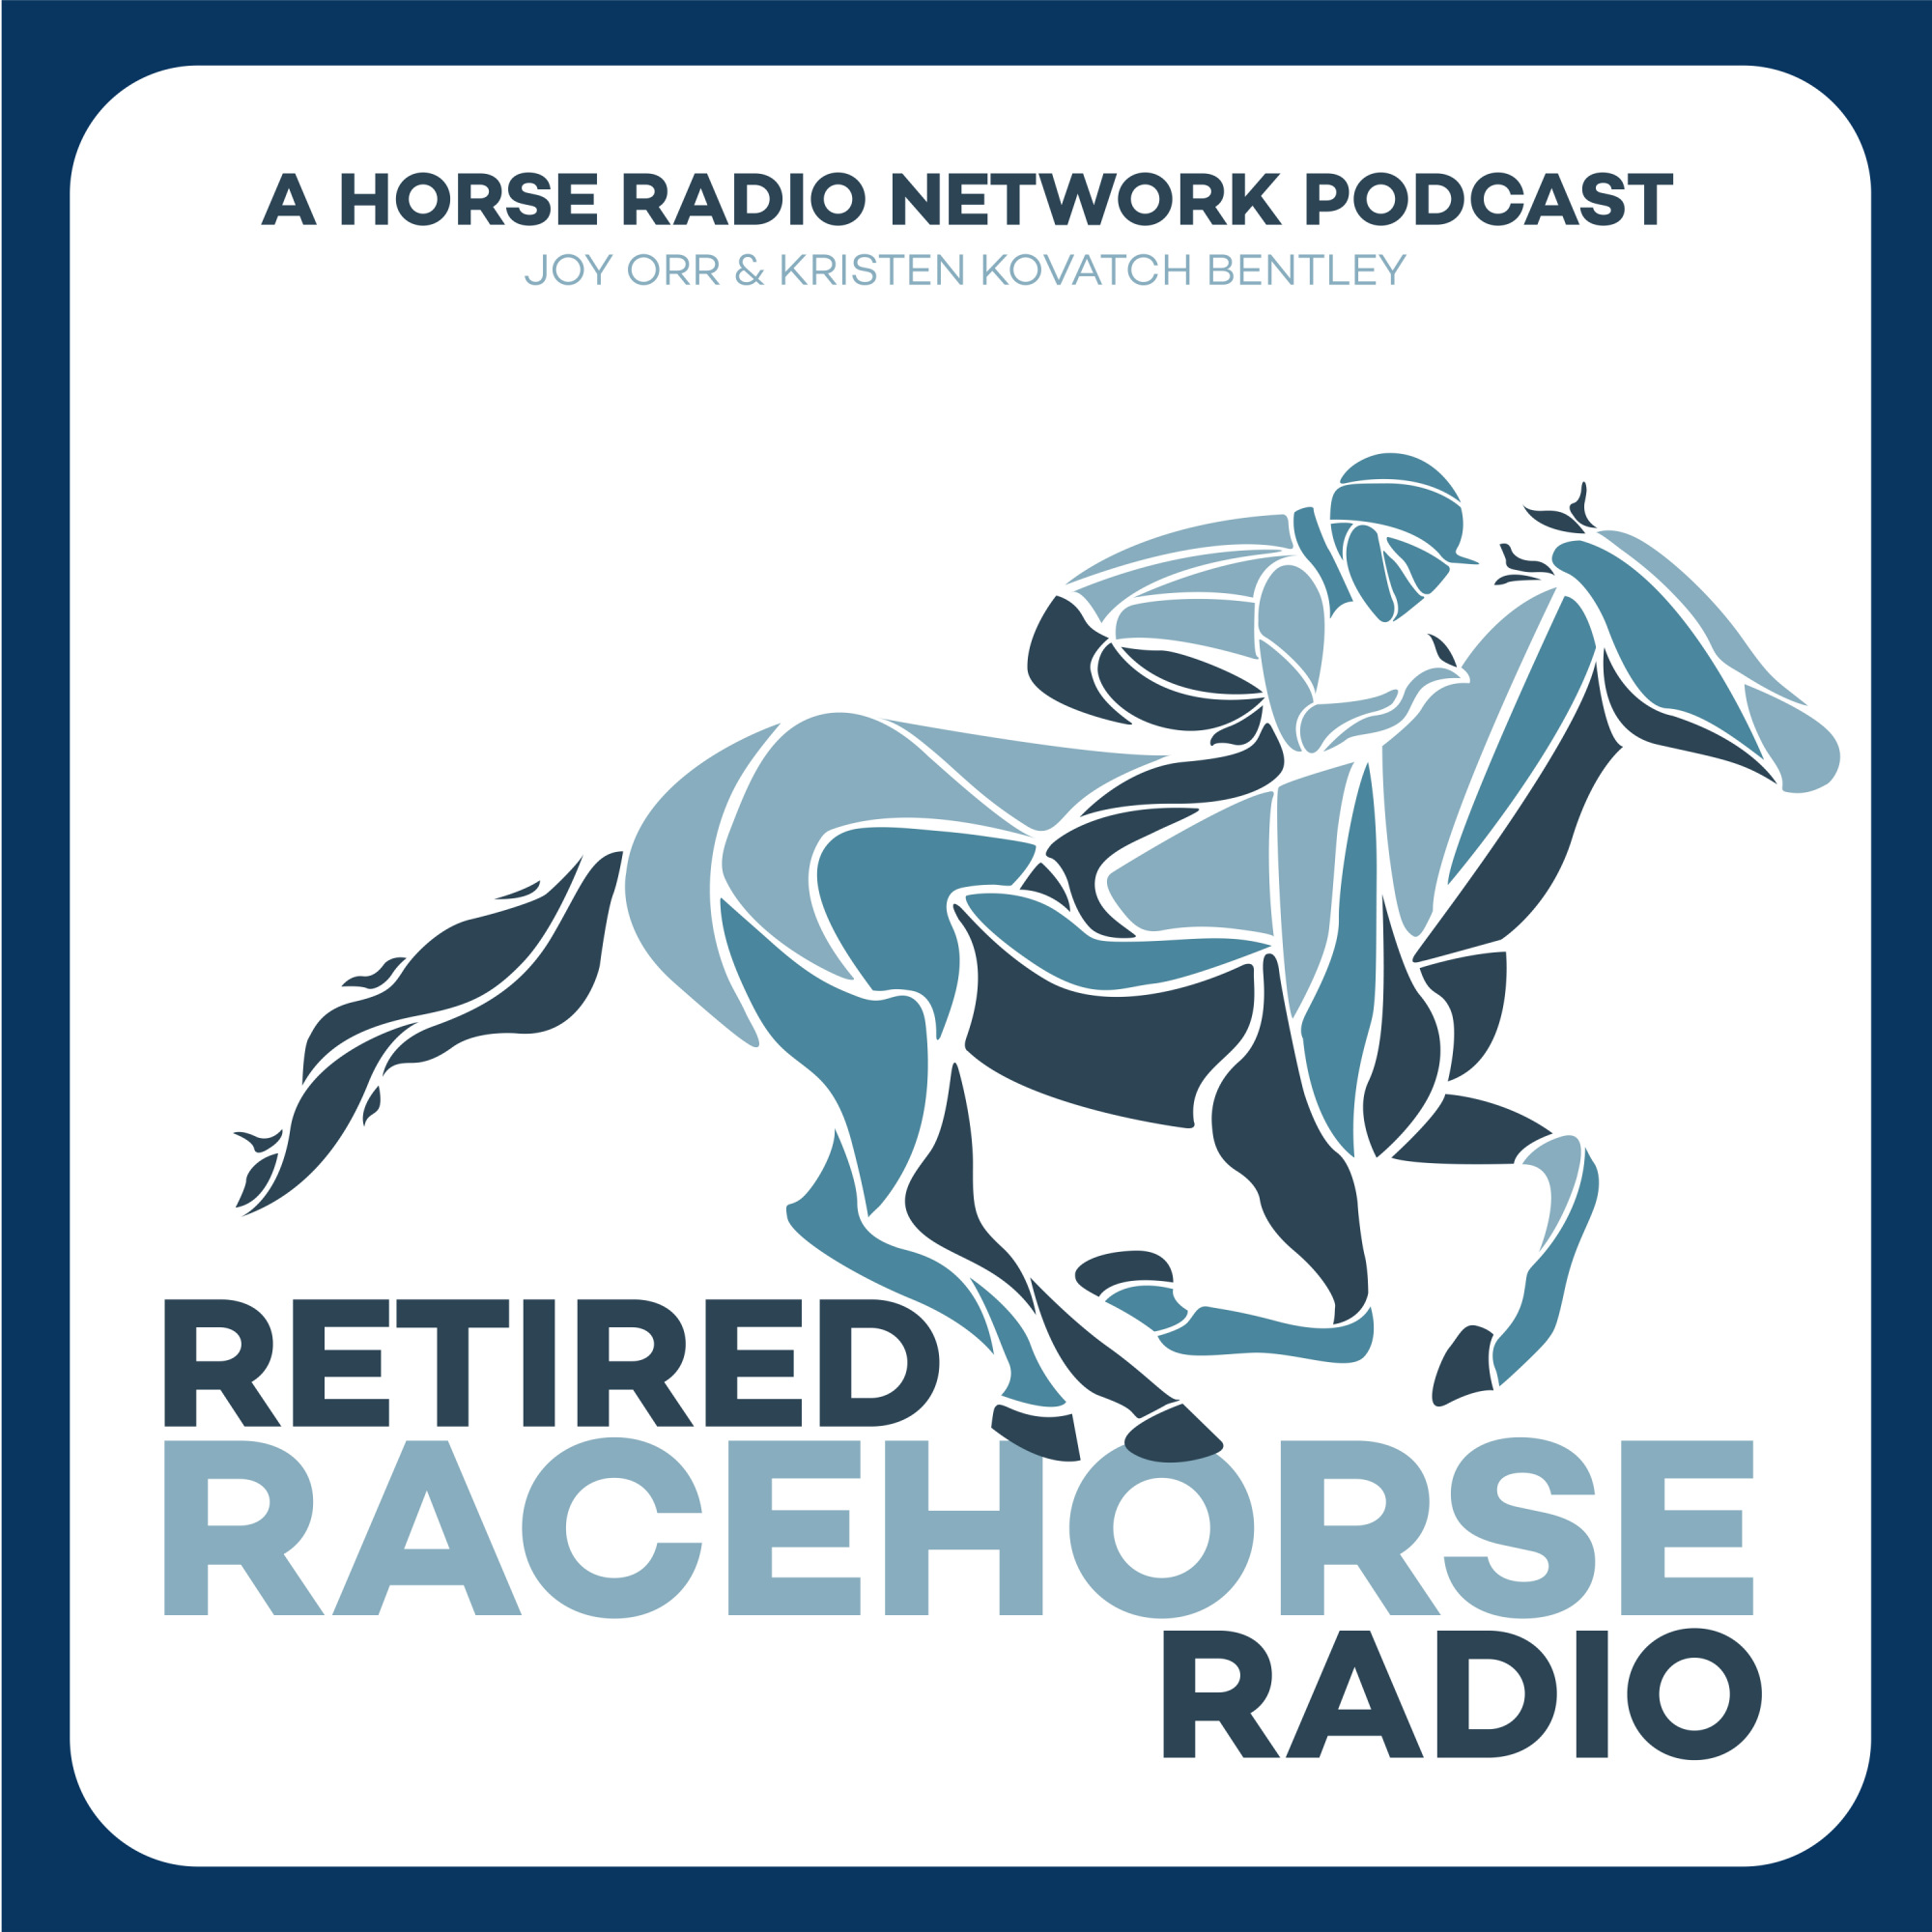 Retired Racehorse Radio